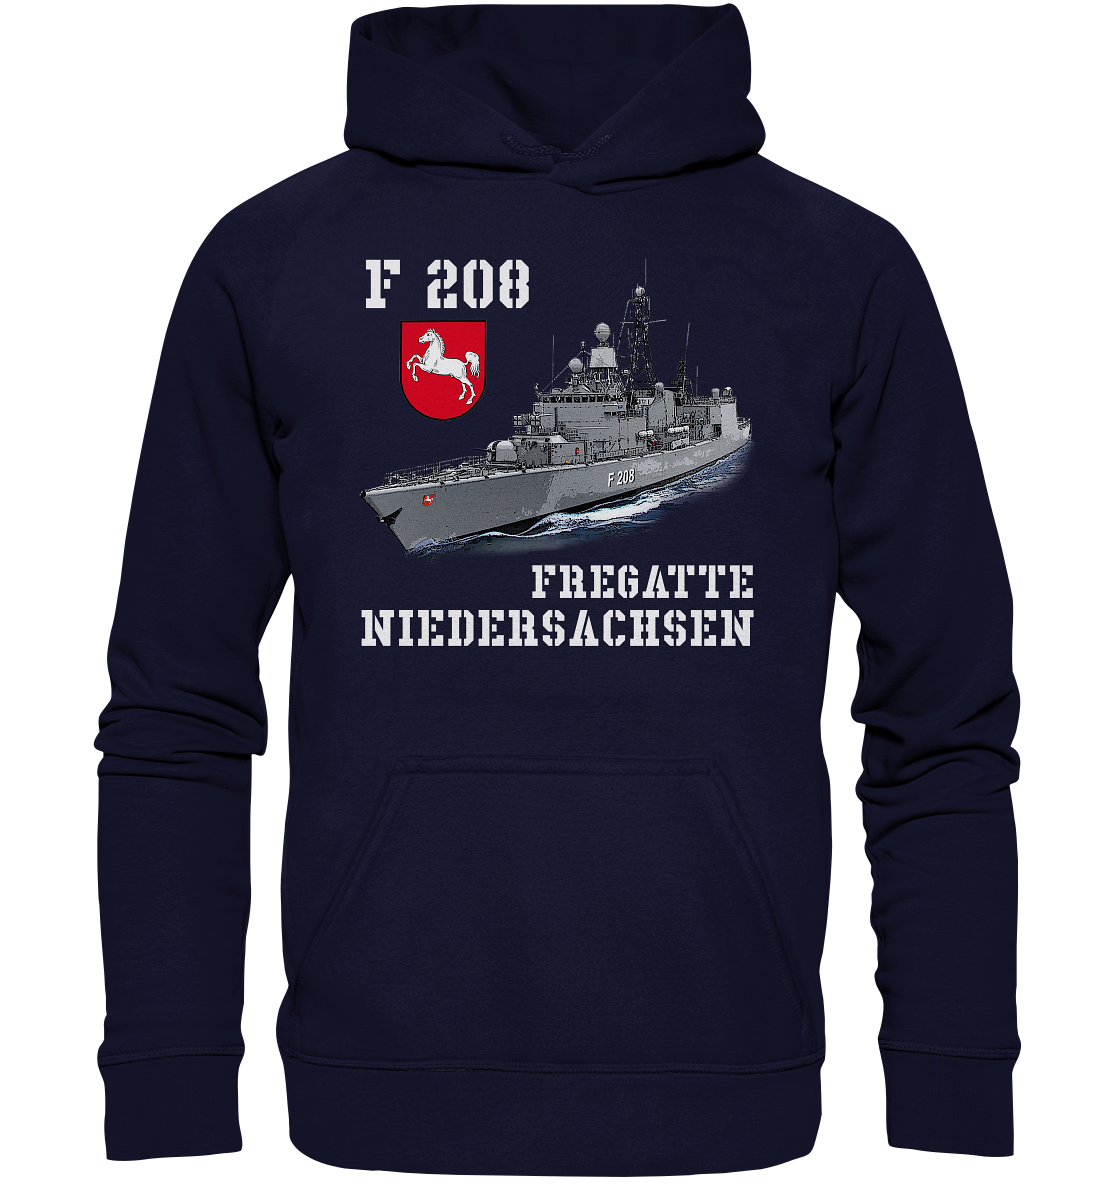 F208 Fregatte NIEDERSACHSEN - Basic Unisex Hoodie XL